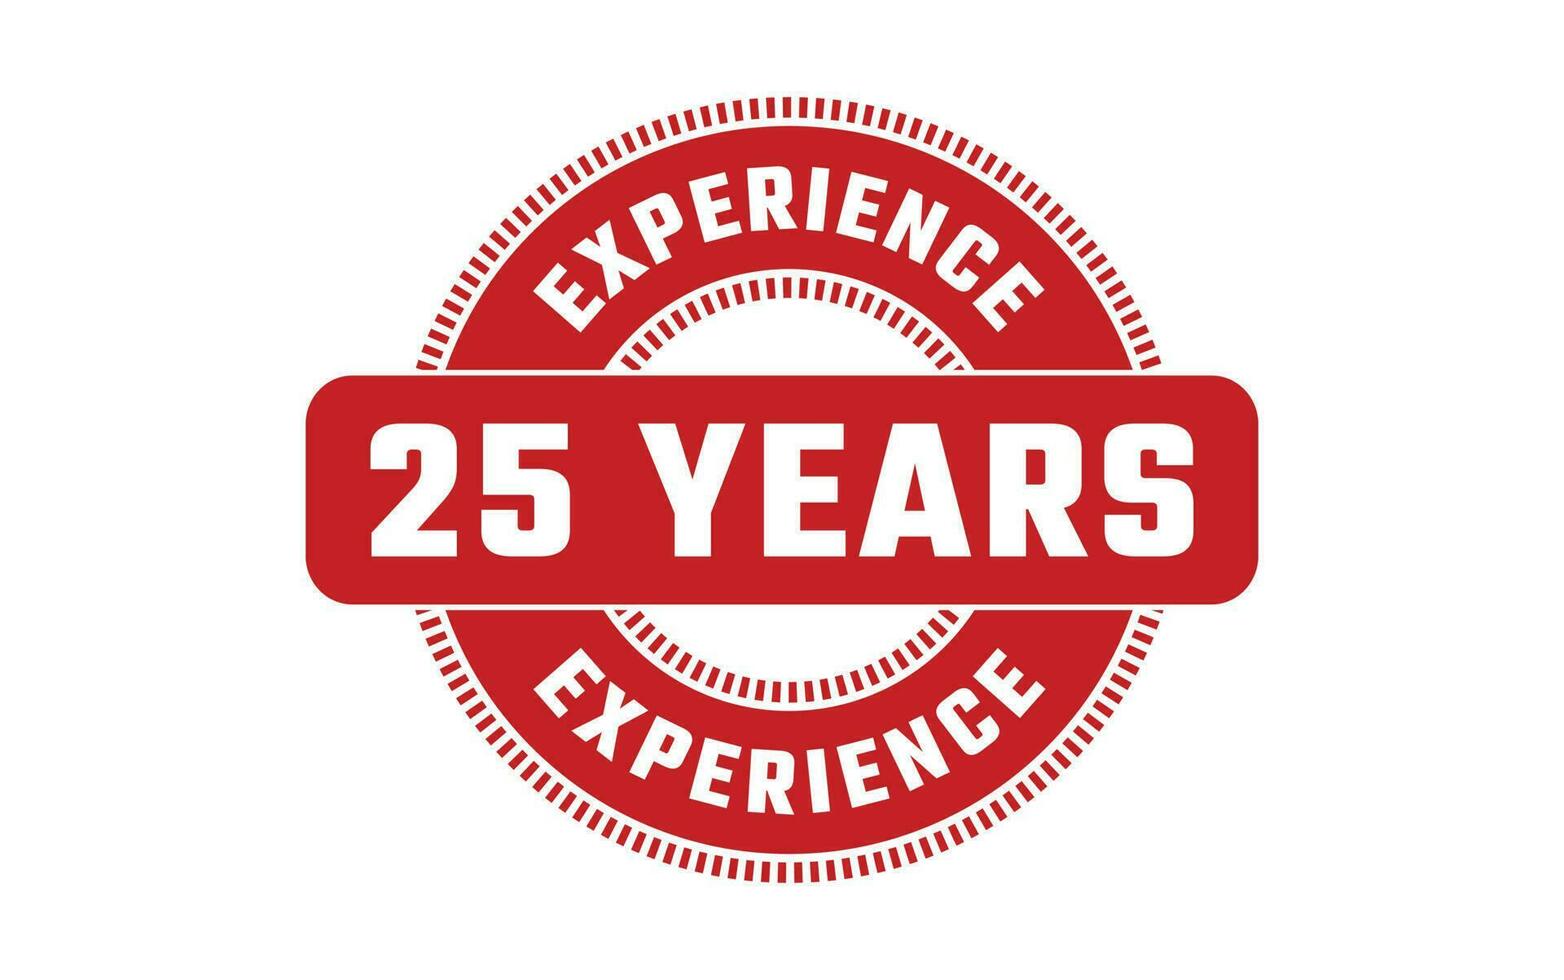 25 Jahre Erfahrung Gummi Briefmarke vektor